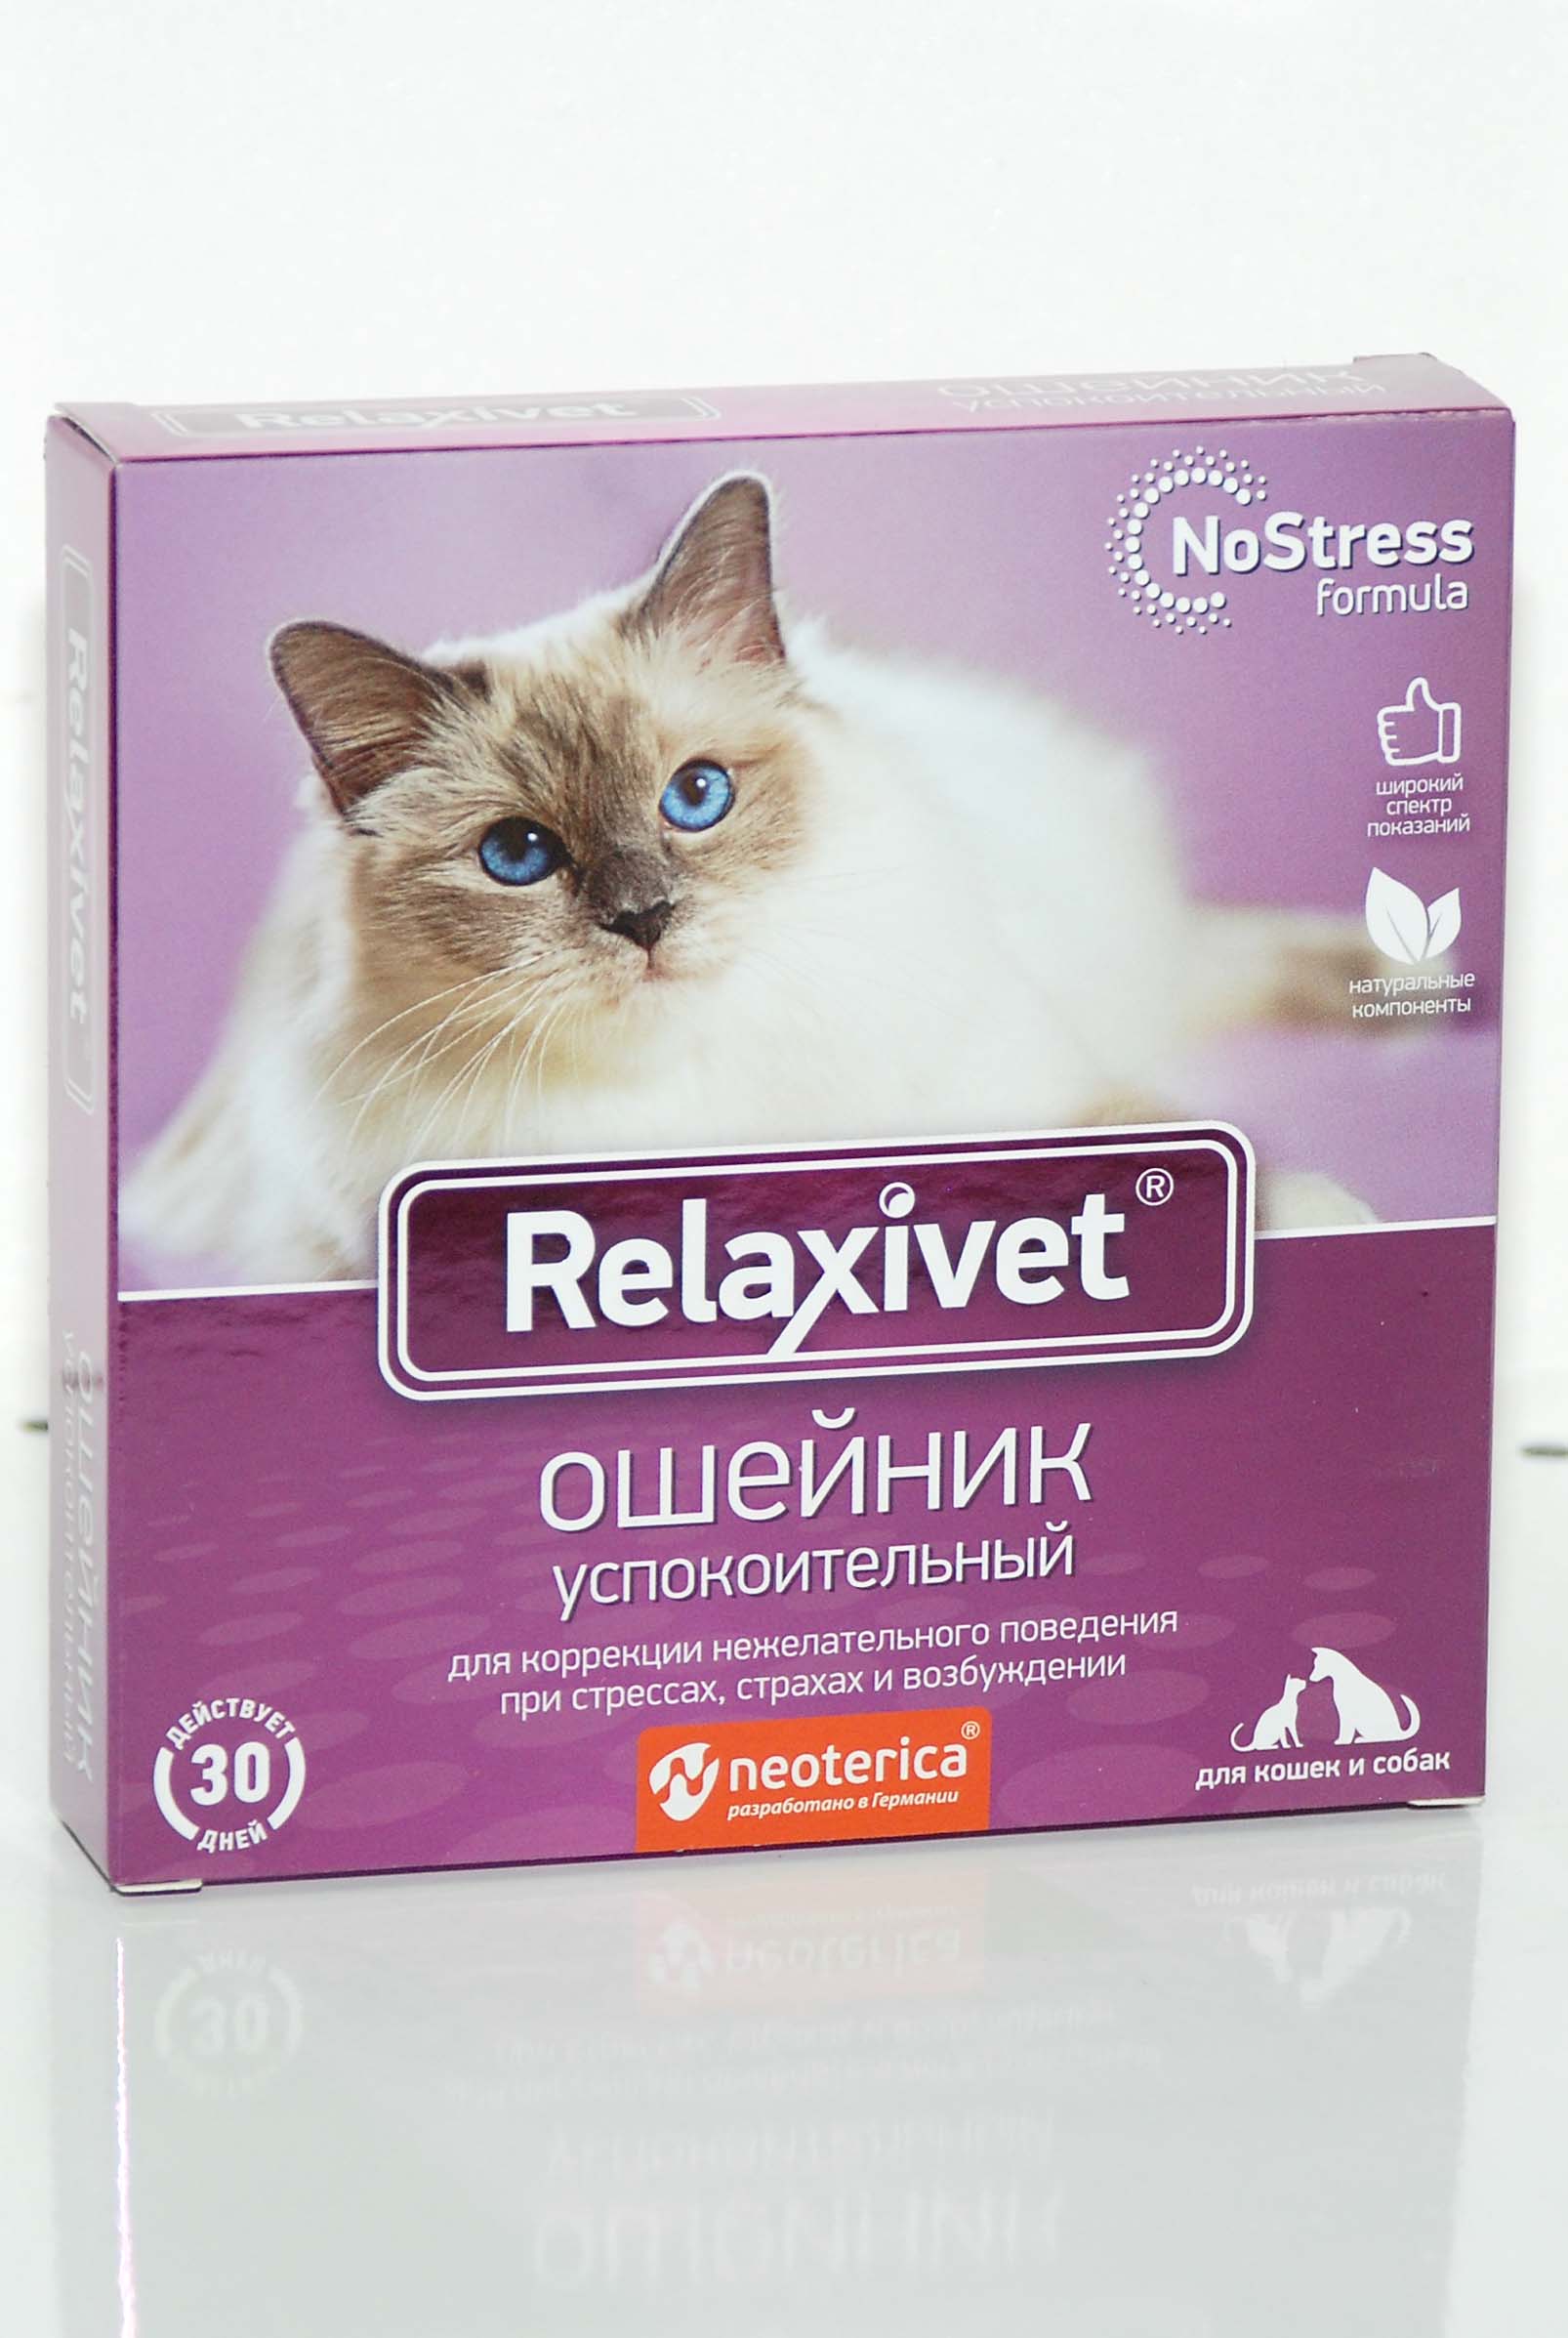 Relaxivet капли успокоительные. Релаксивет ошейник для кошек. Relaxivet диффузор + жидкость успокоительная для кошек и собак, 45мл x102,. Relaxivet Relaxivet ошейник успокоительный. Релаксивет диффузор для кошек.